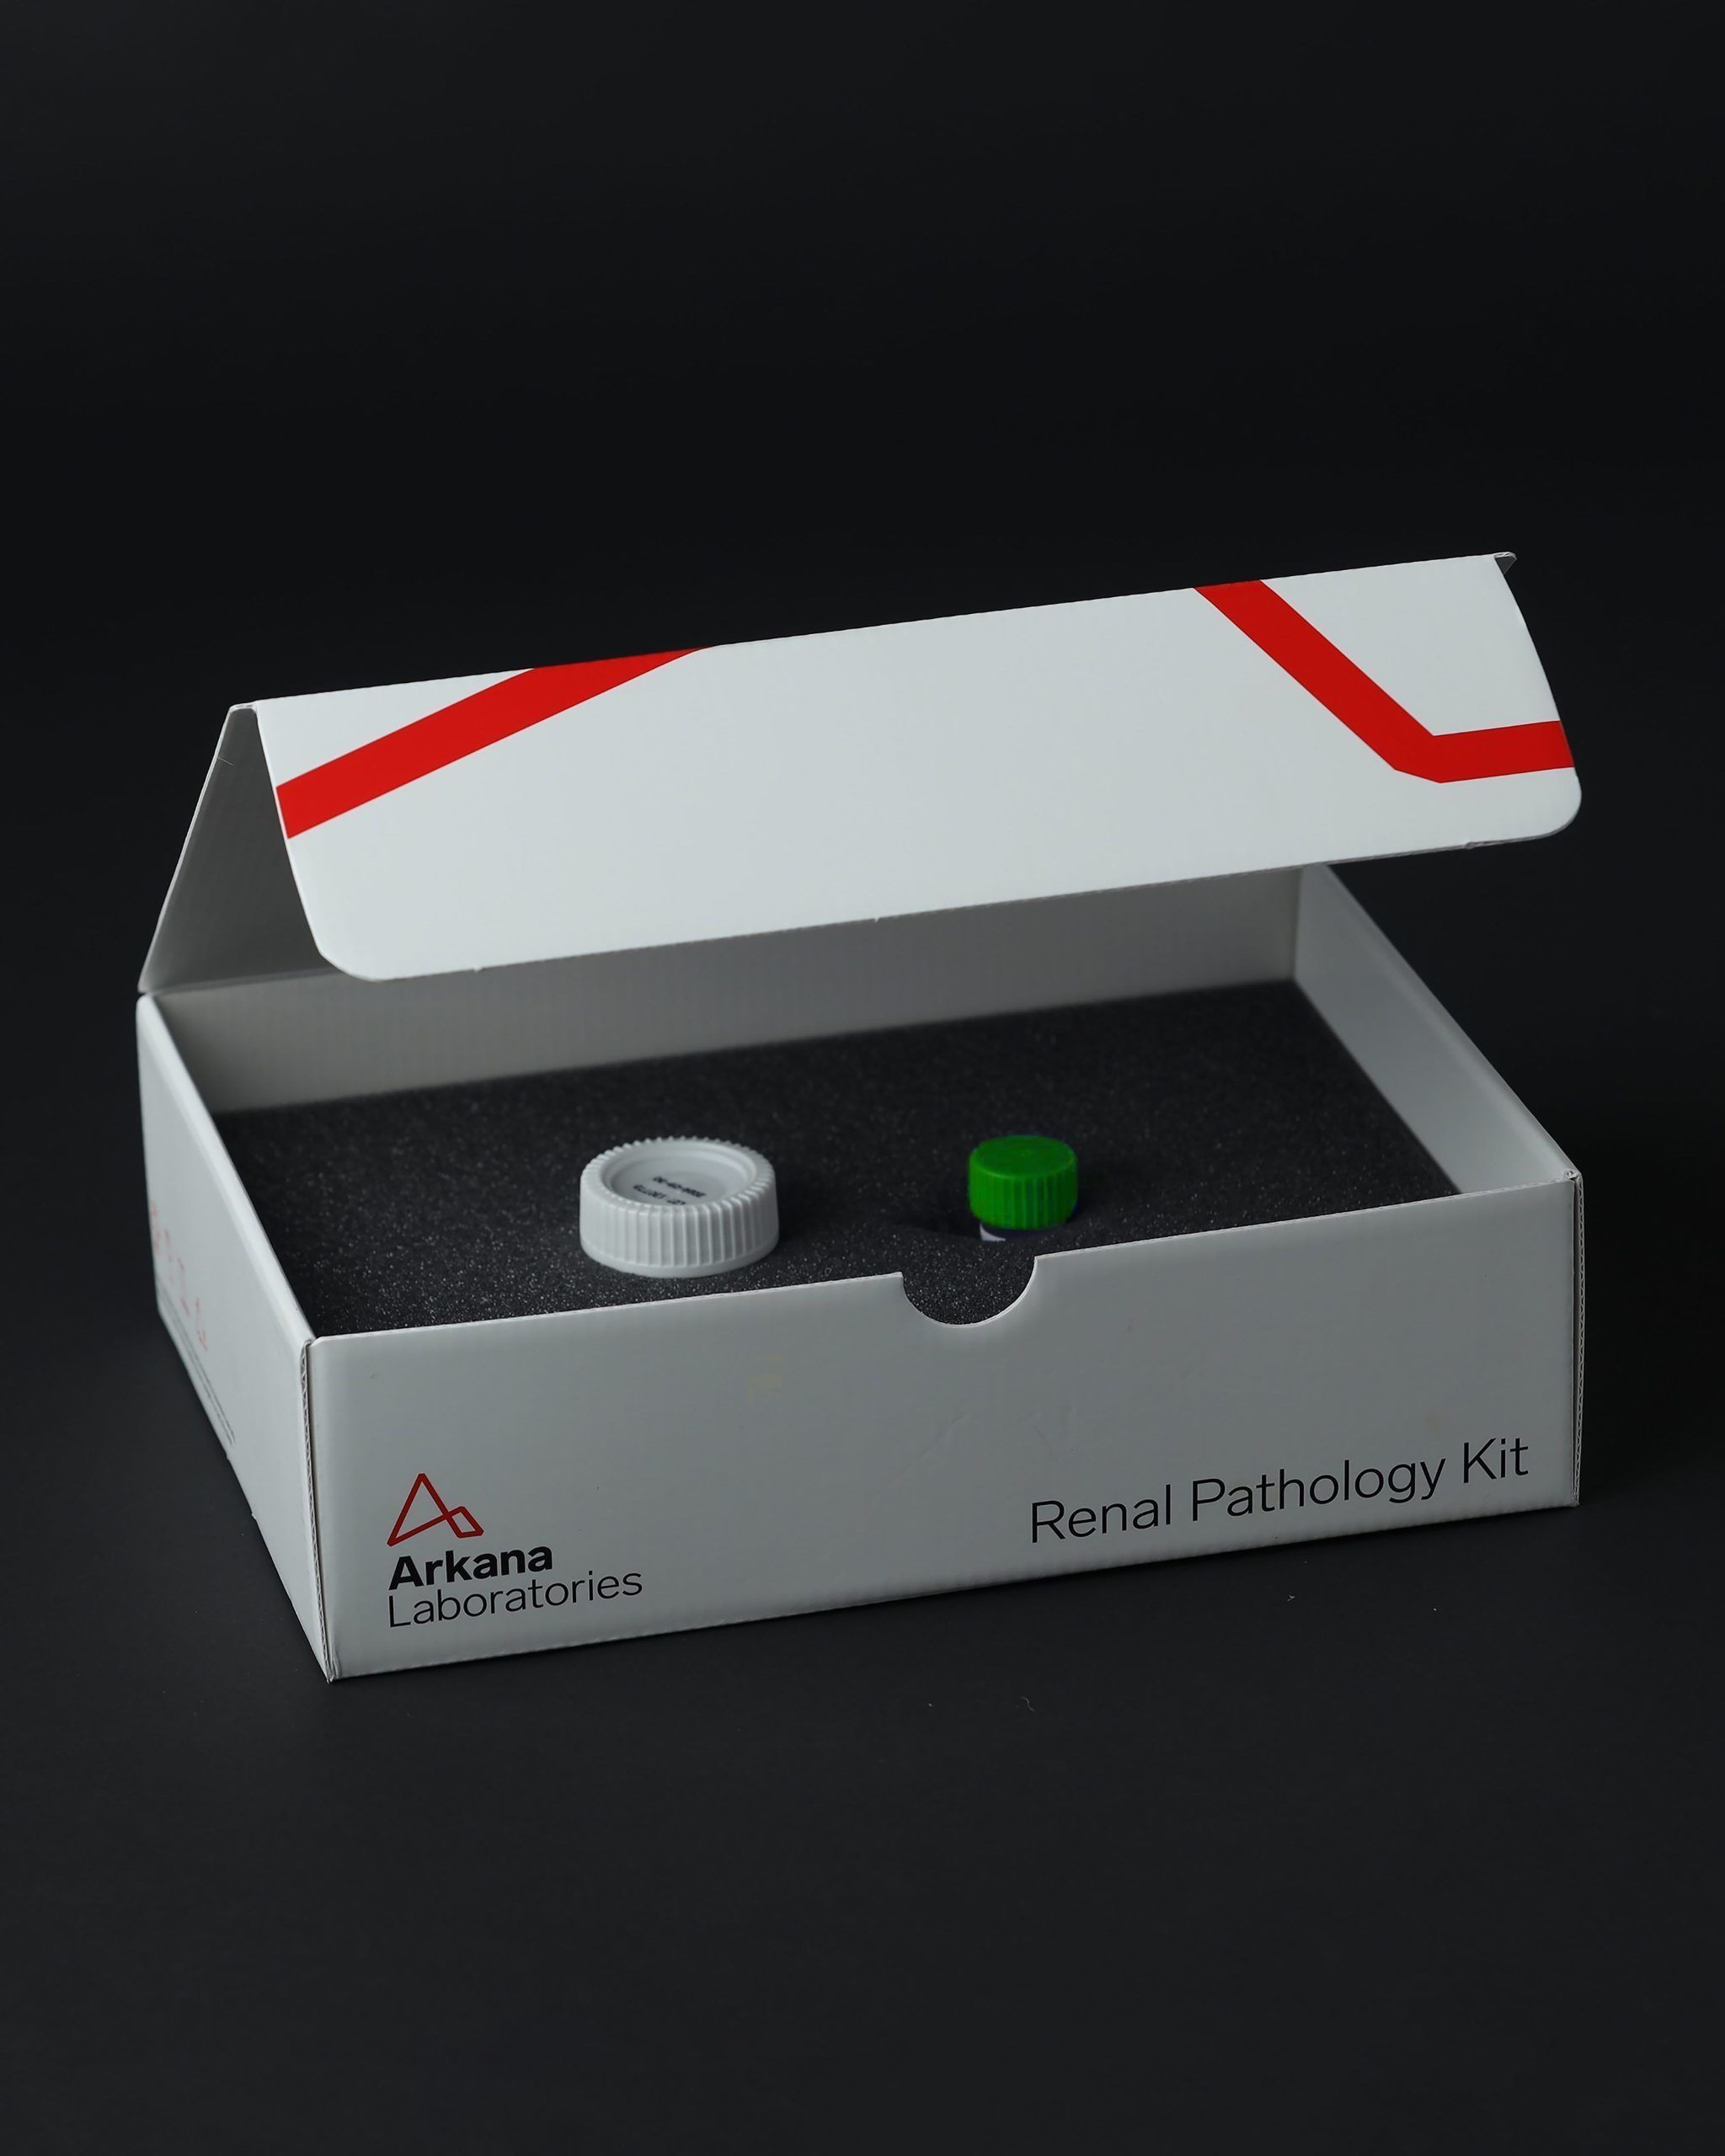 Renal biopsy kits for renal pathology testing